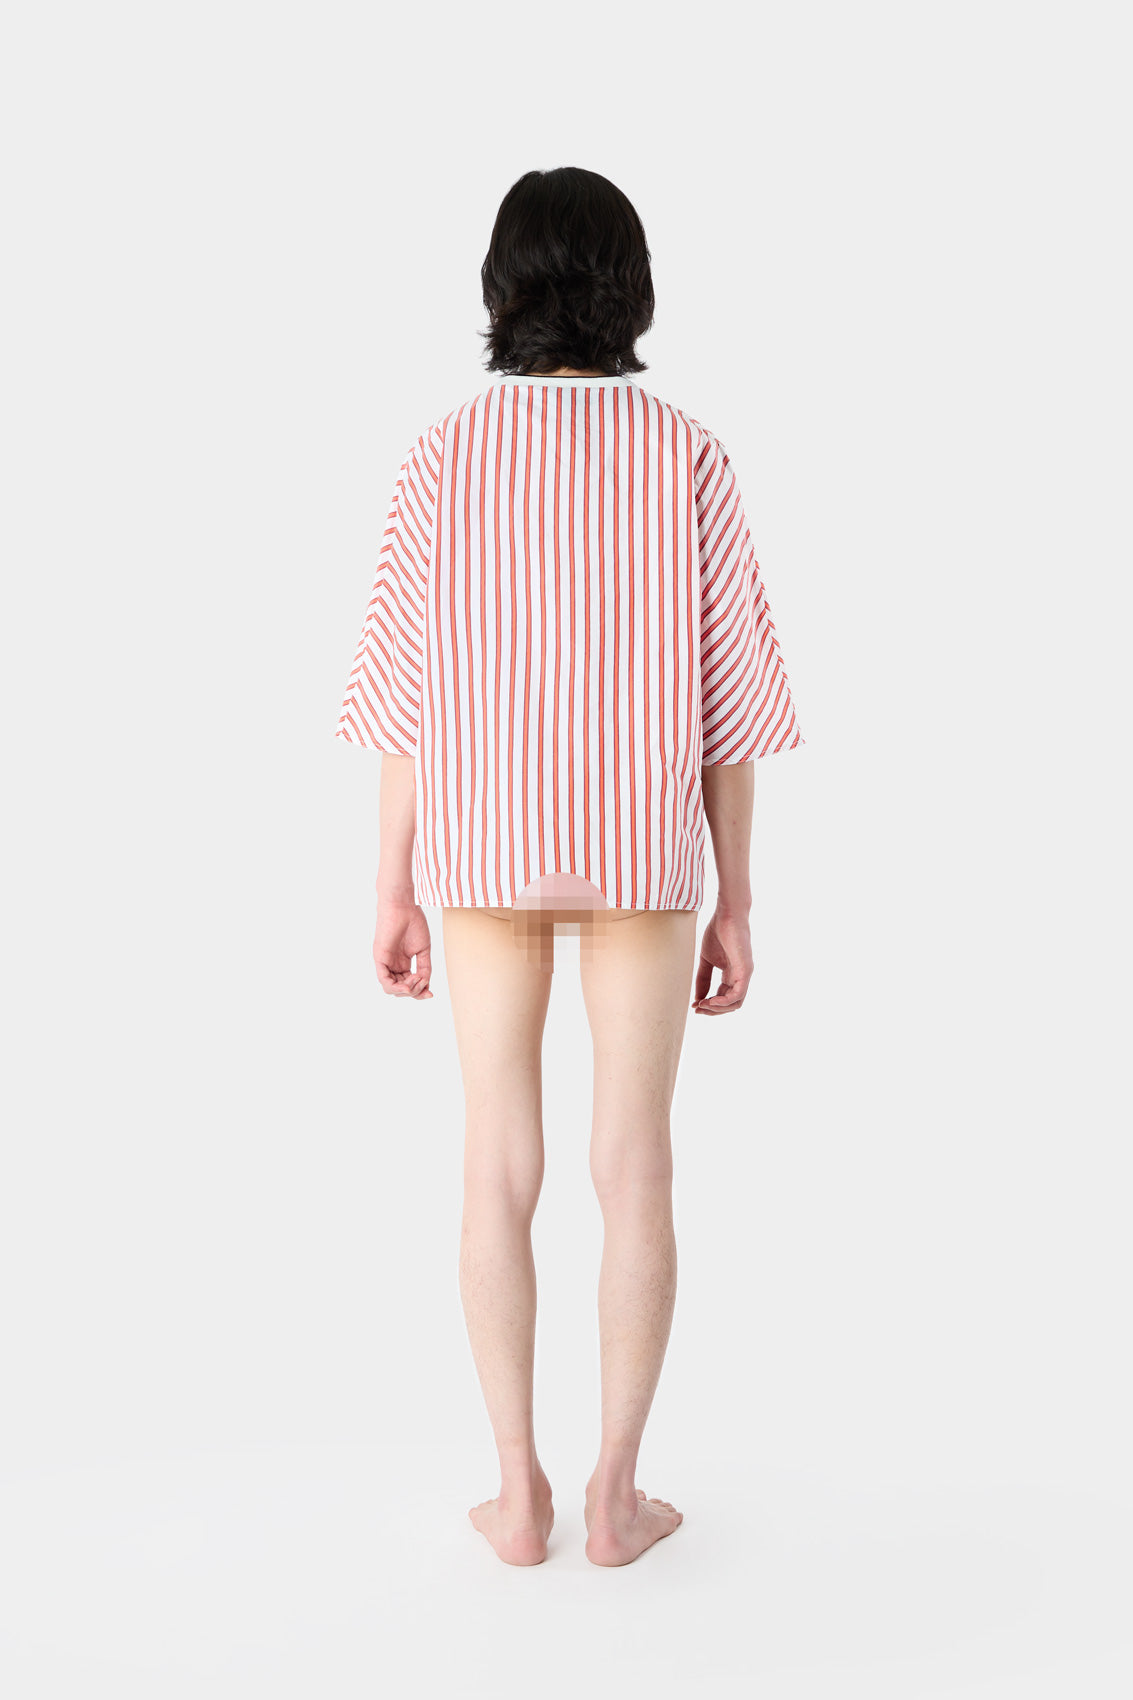 KIMONO T-SHIRT / cream & red stripes